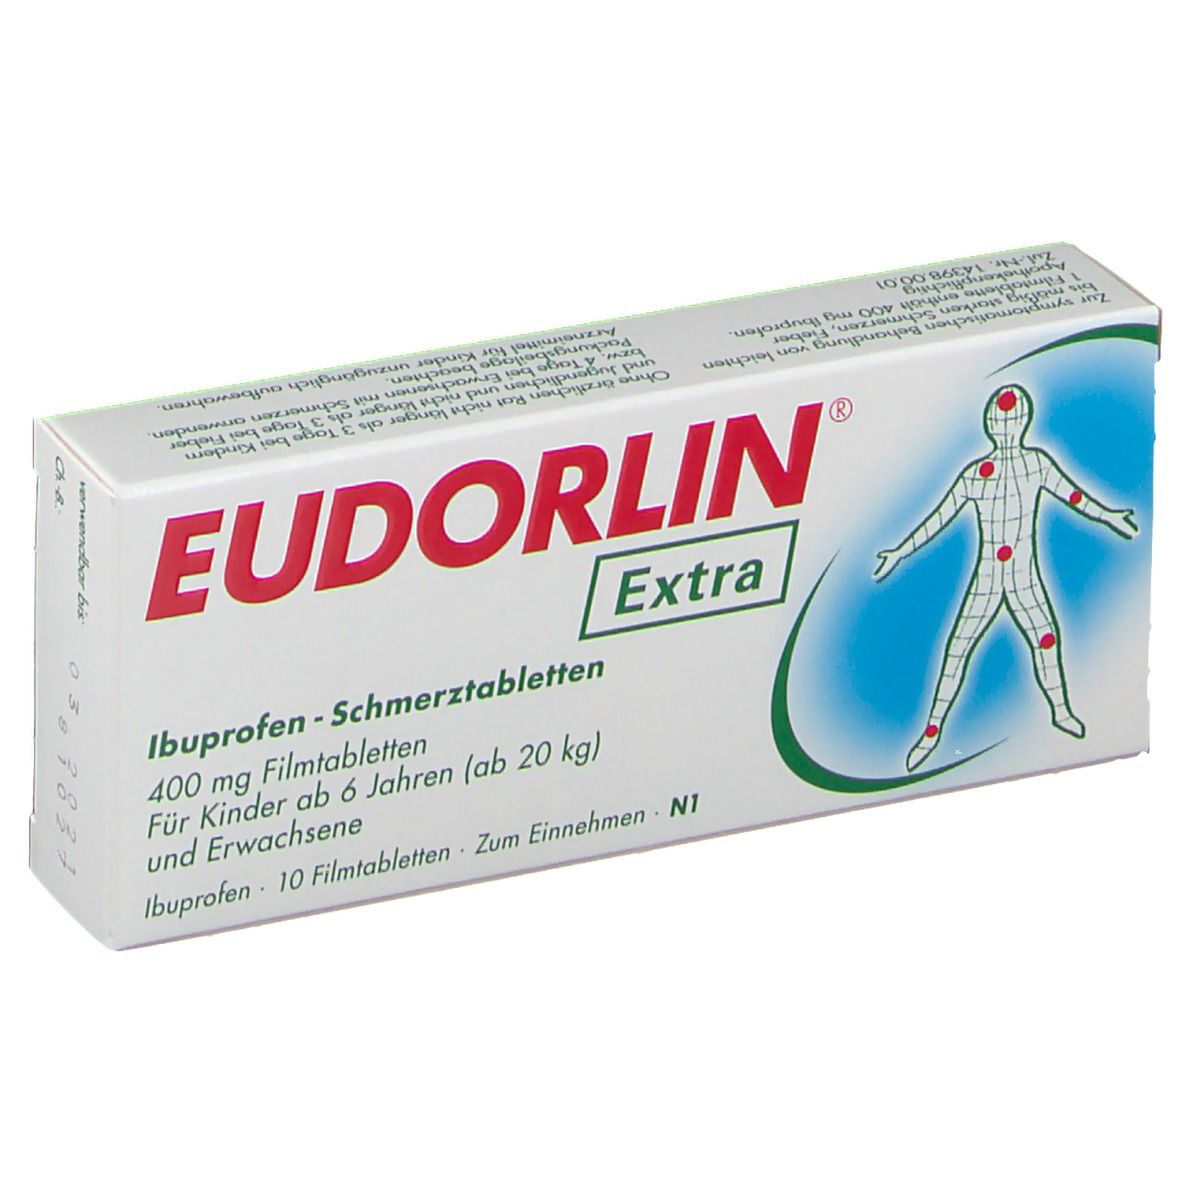 EUDORLIN® Extra Ibuprofen Schmerztabletten